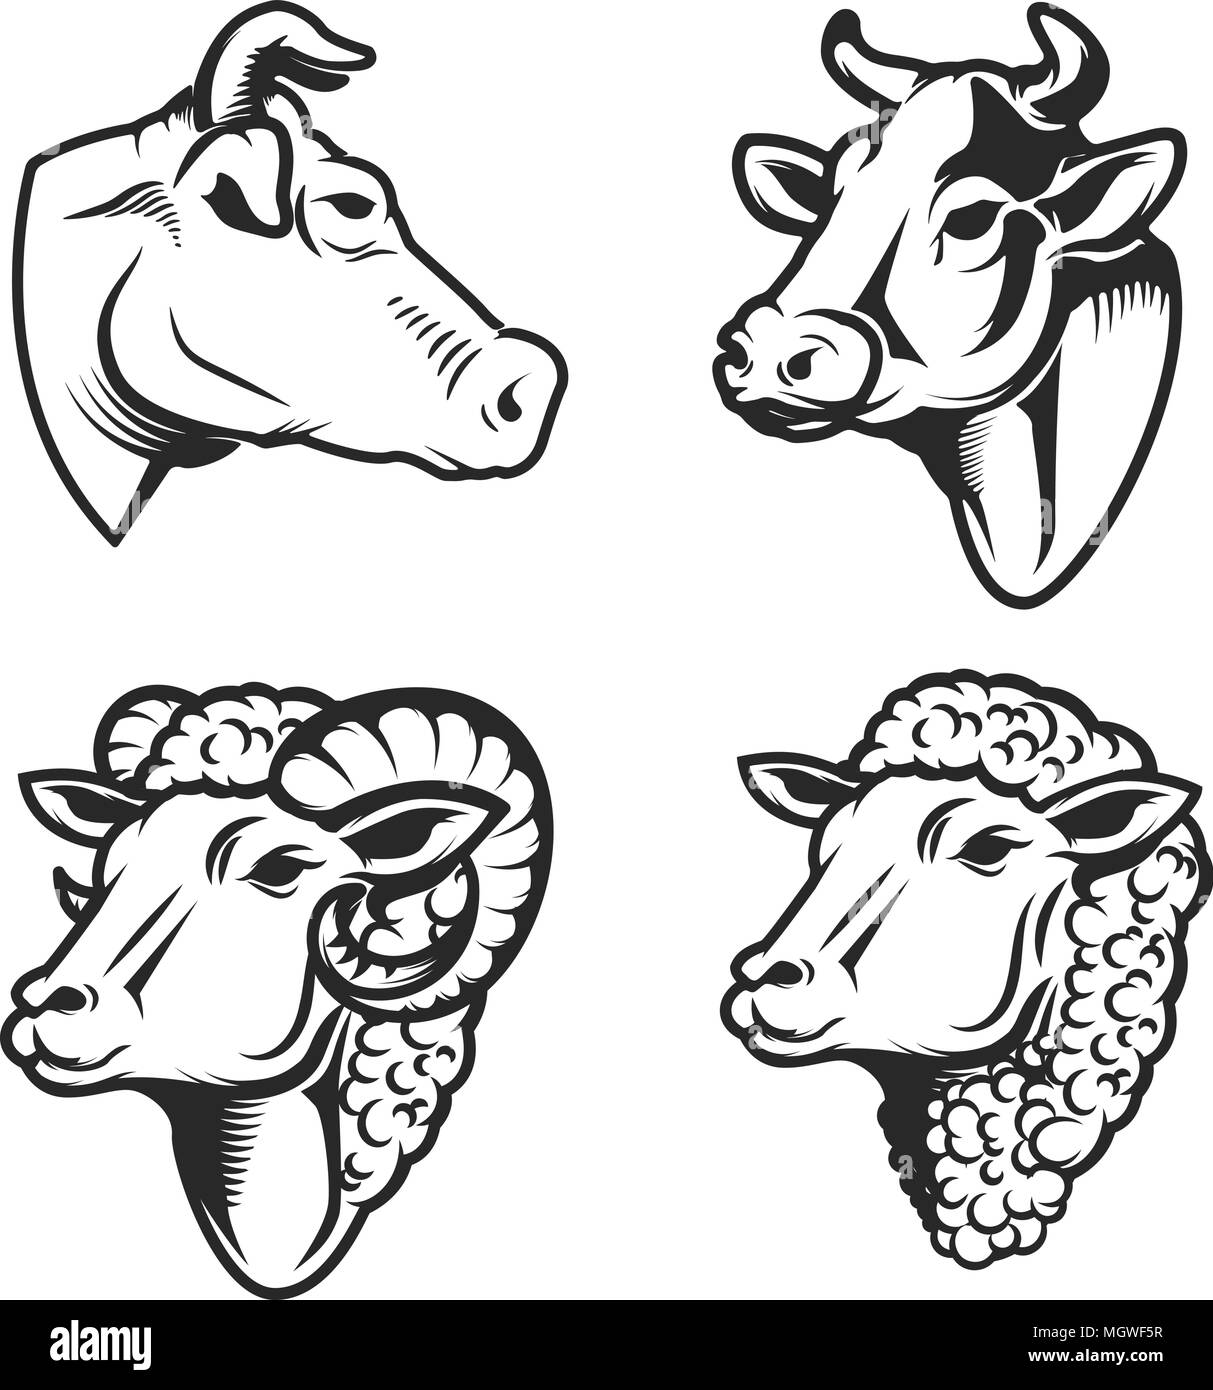 Ensemble de têtes de vache et moutons sur fond blanc. L'élément de conception de logo, étiquette, emblème, signe. Image vectorielle Illustration de Vecteur